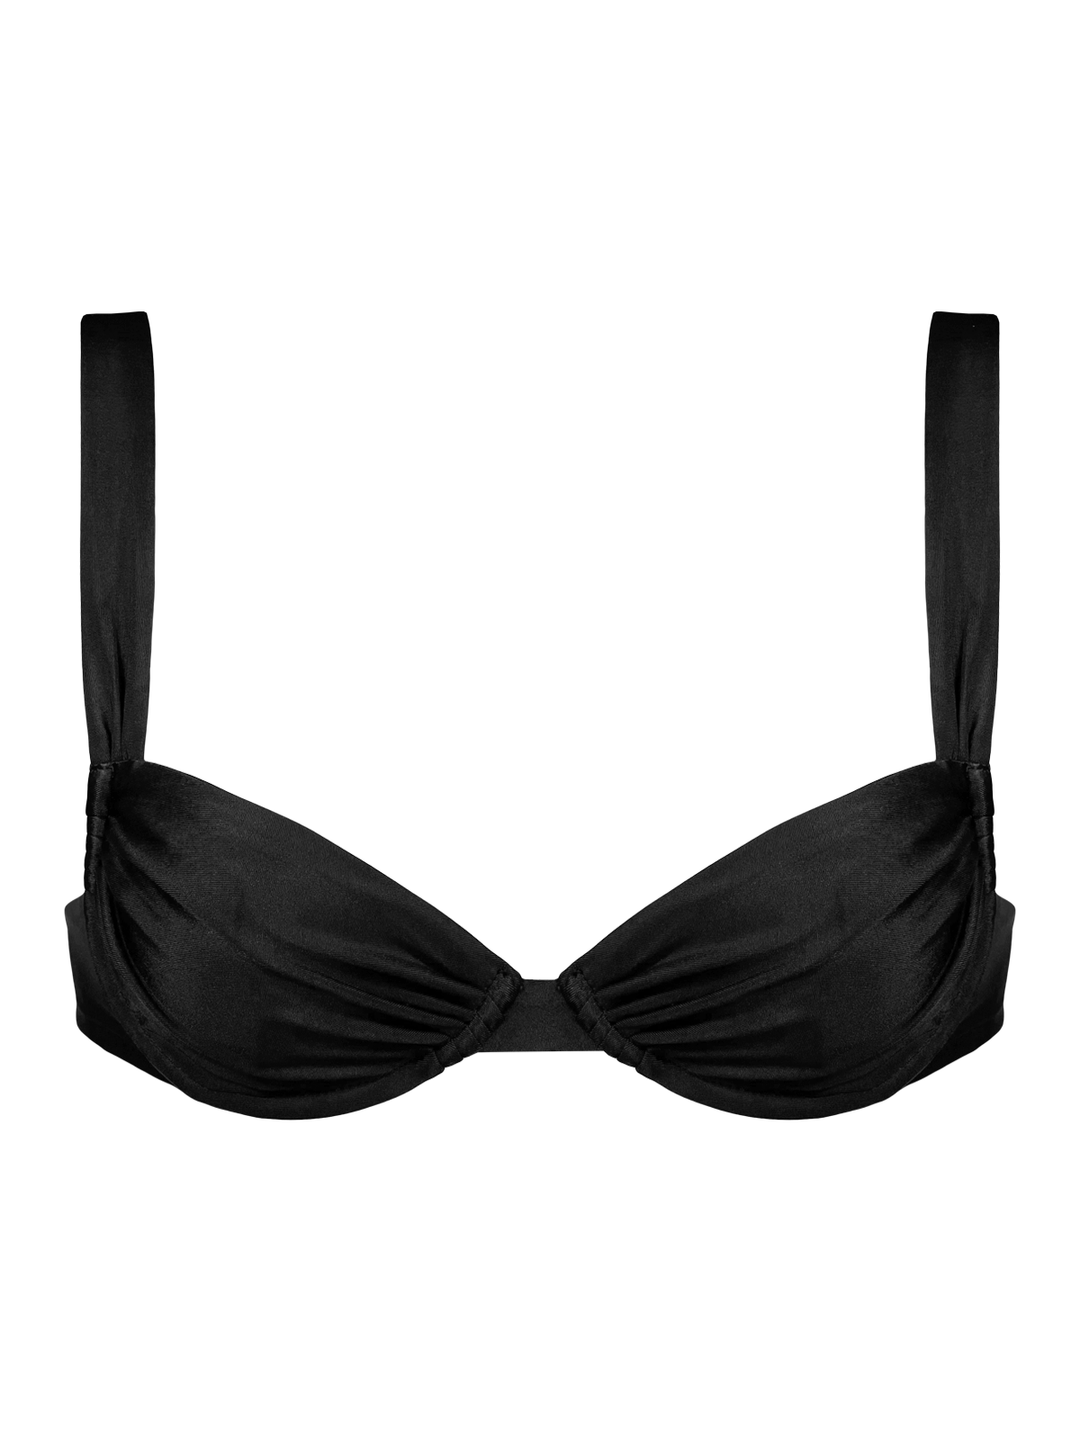 Diana Halter Bikini Top - Black